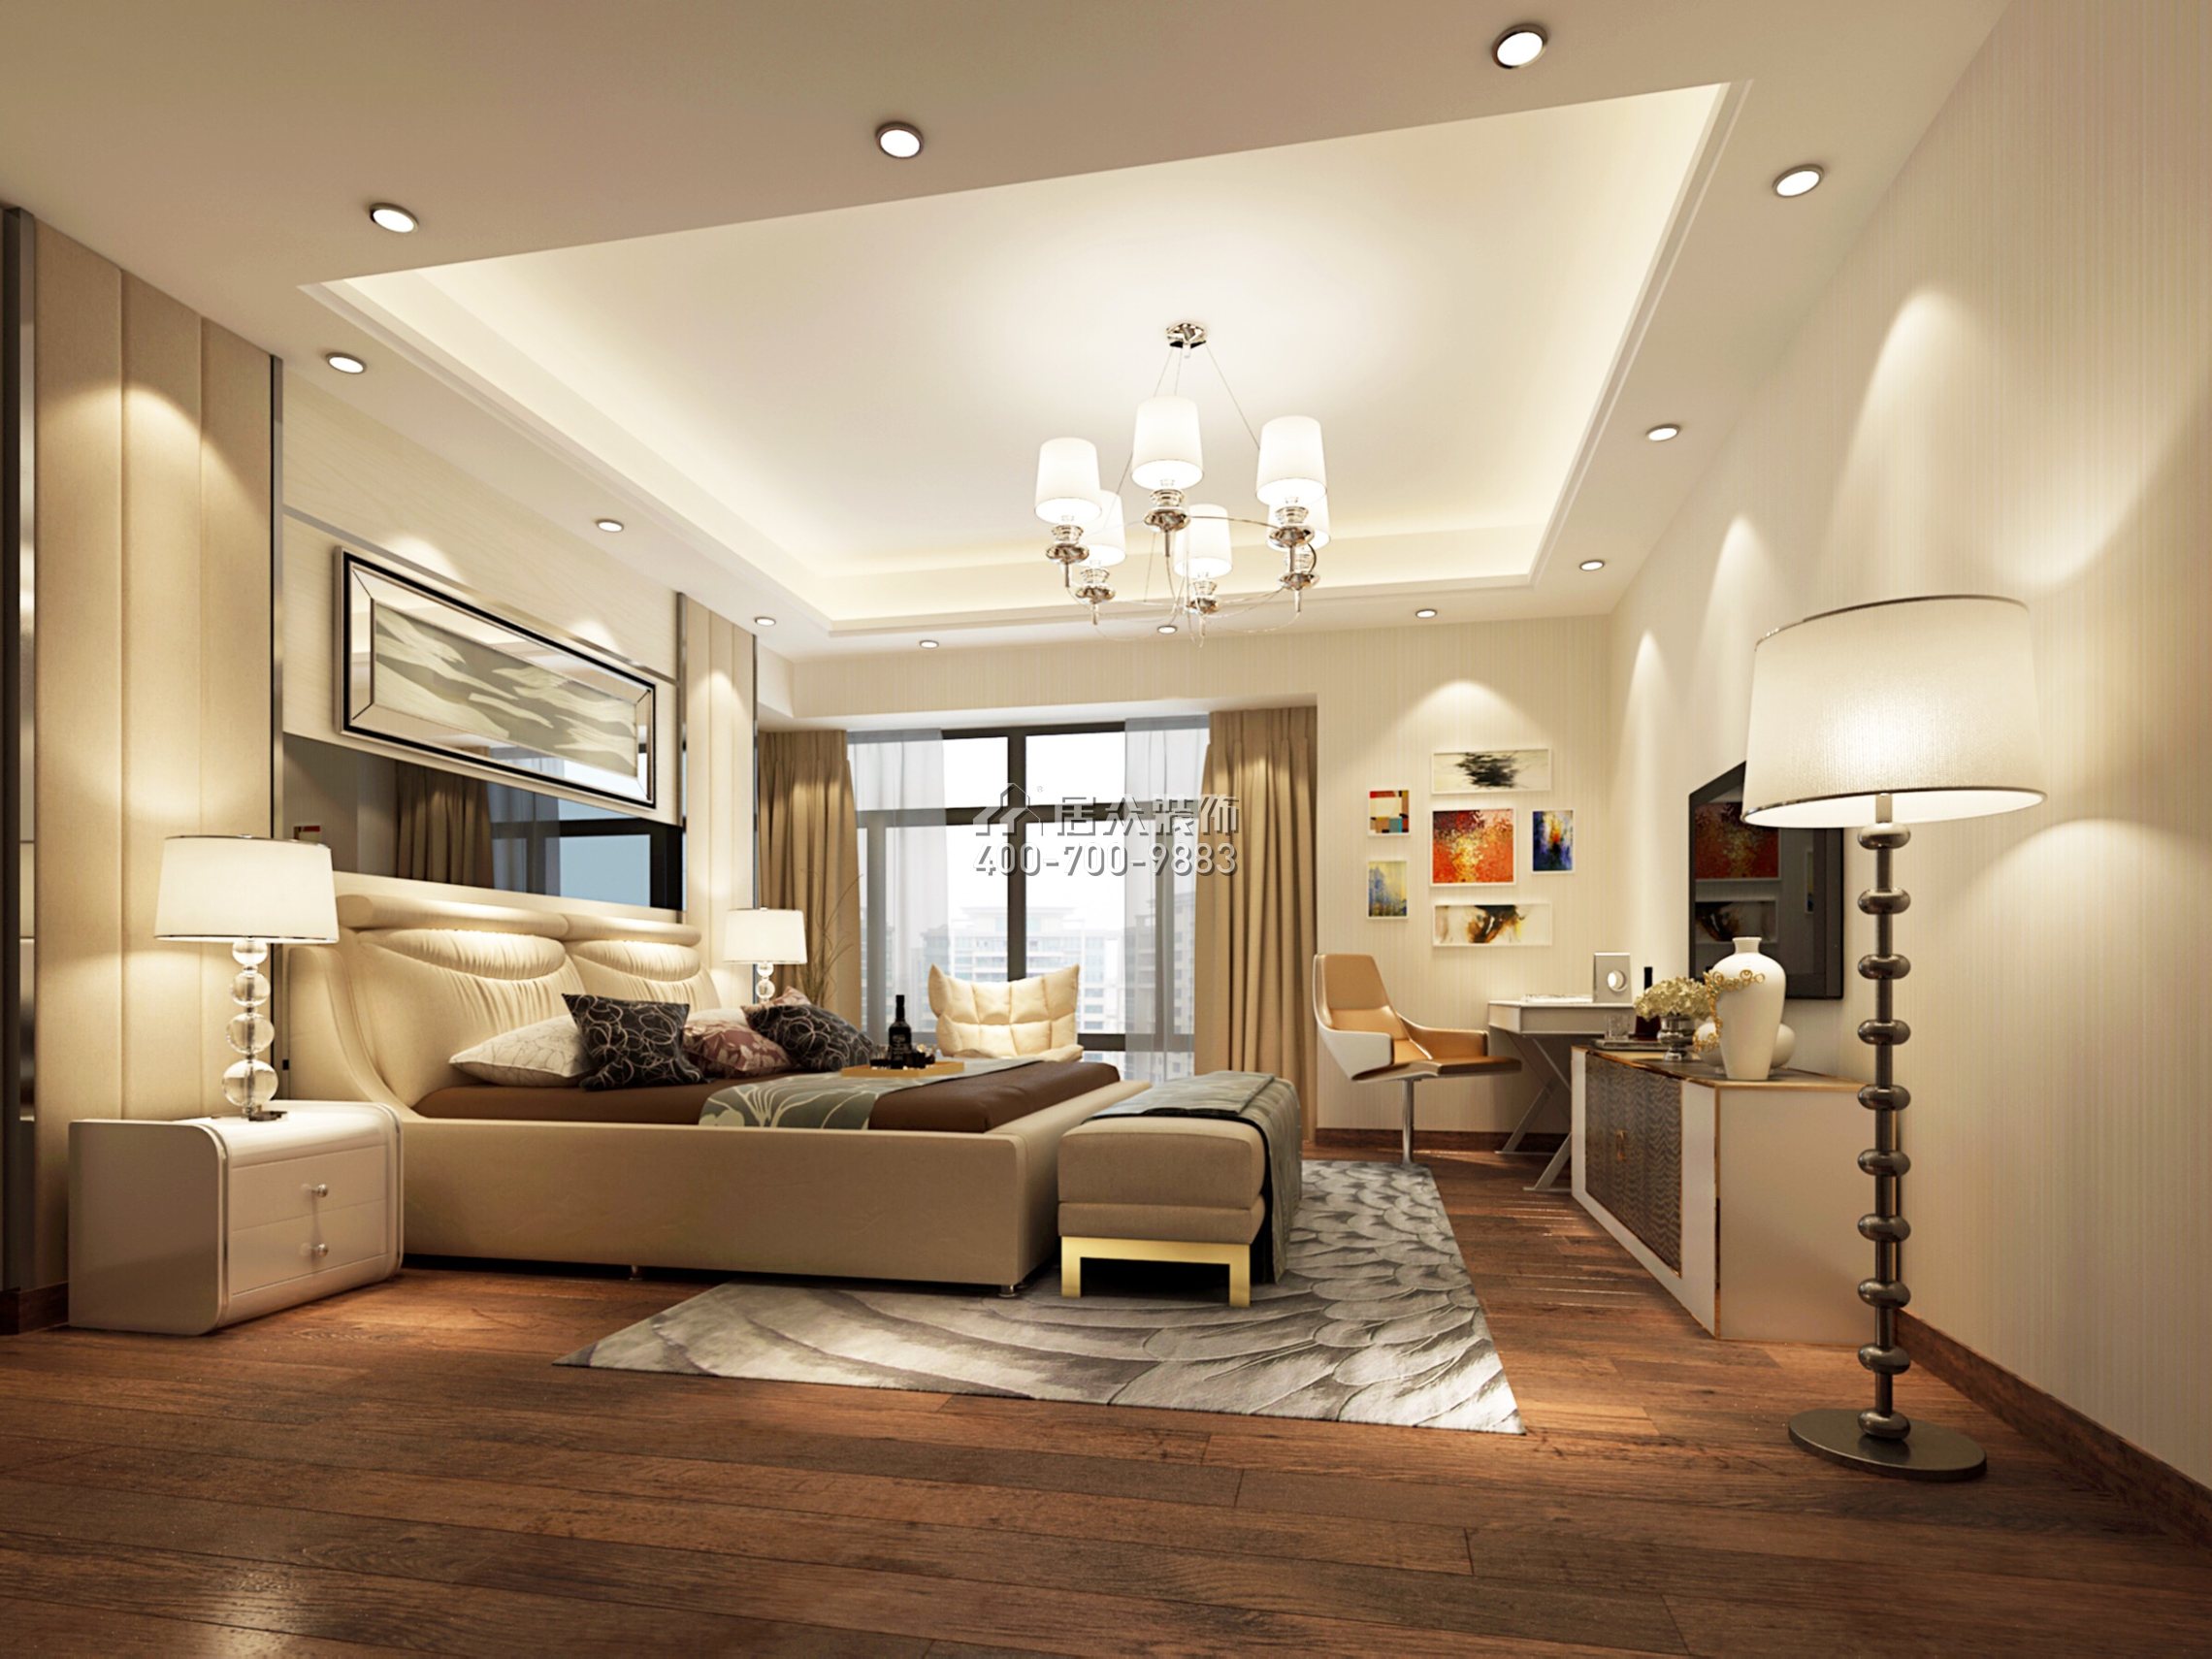 大信君汇湾240平方米新古典风格平层户型卧室装修效果图